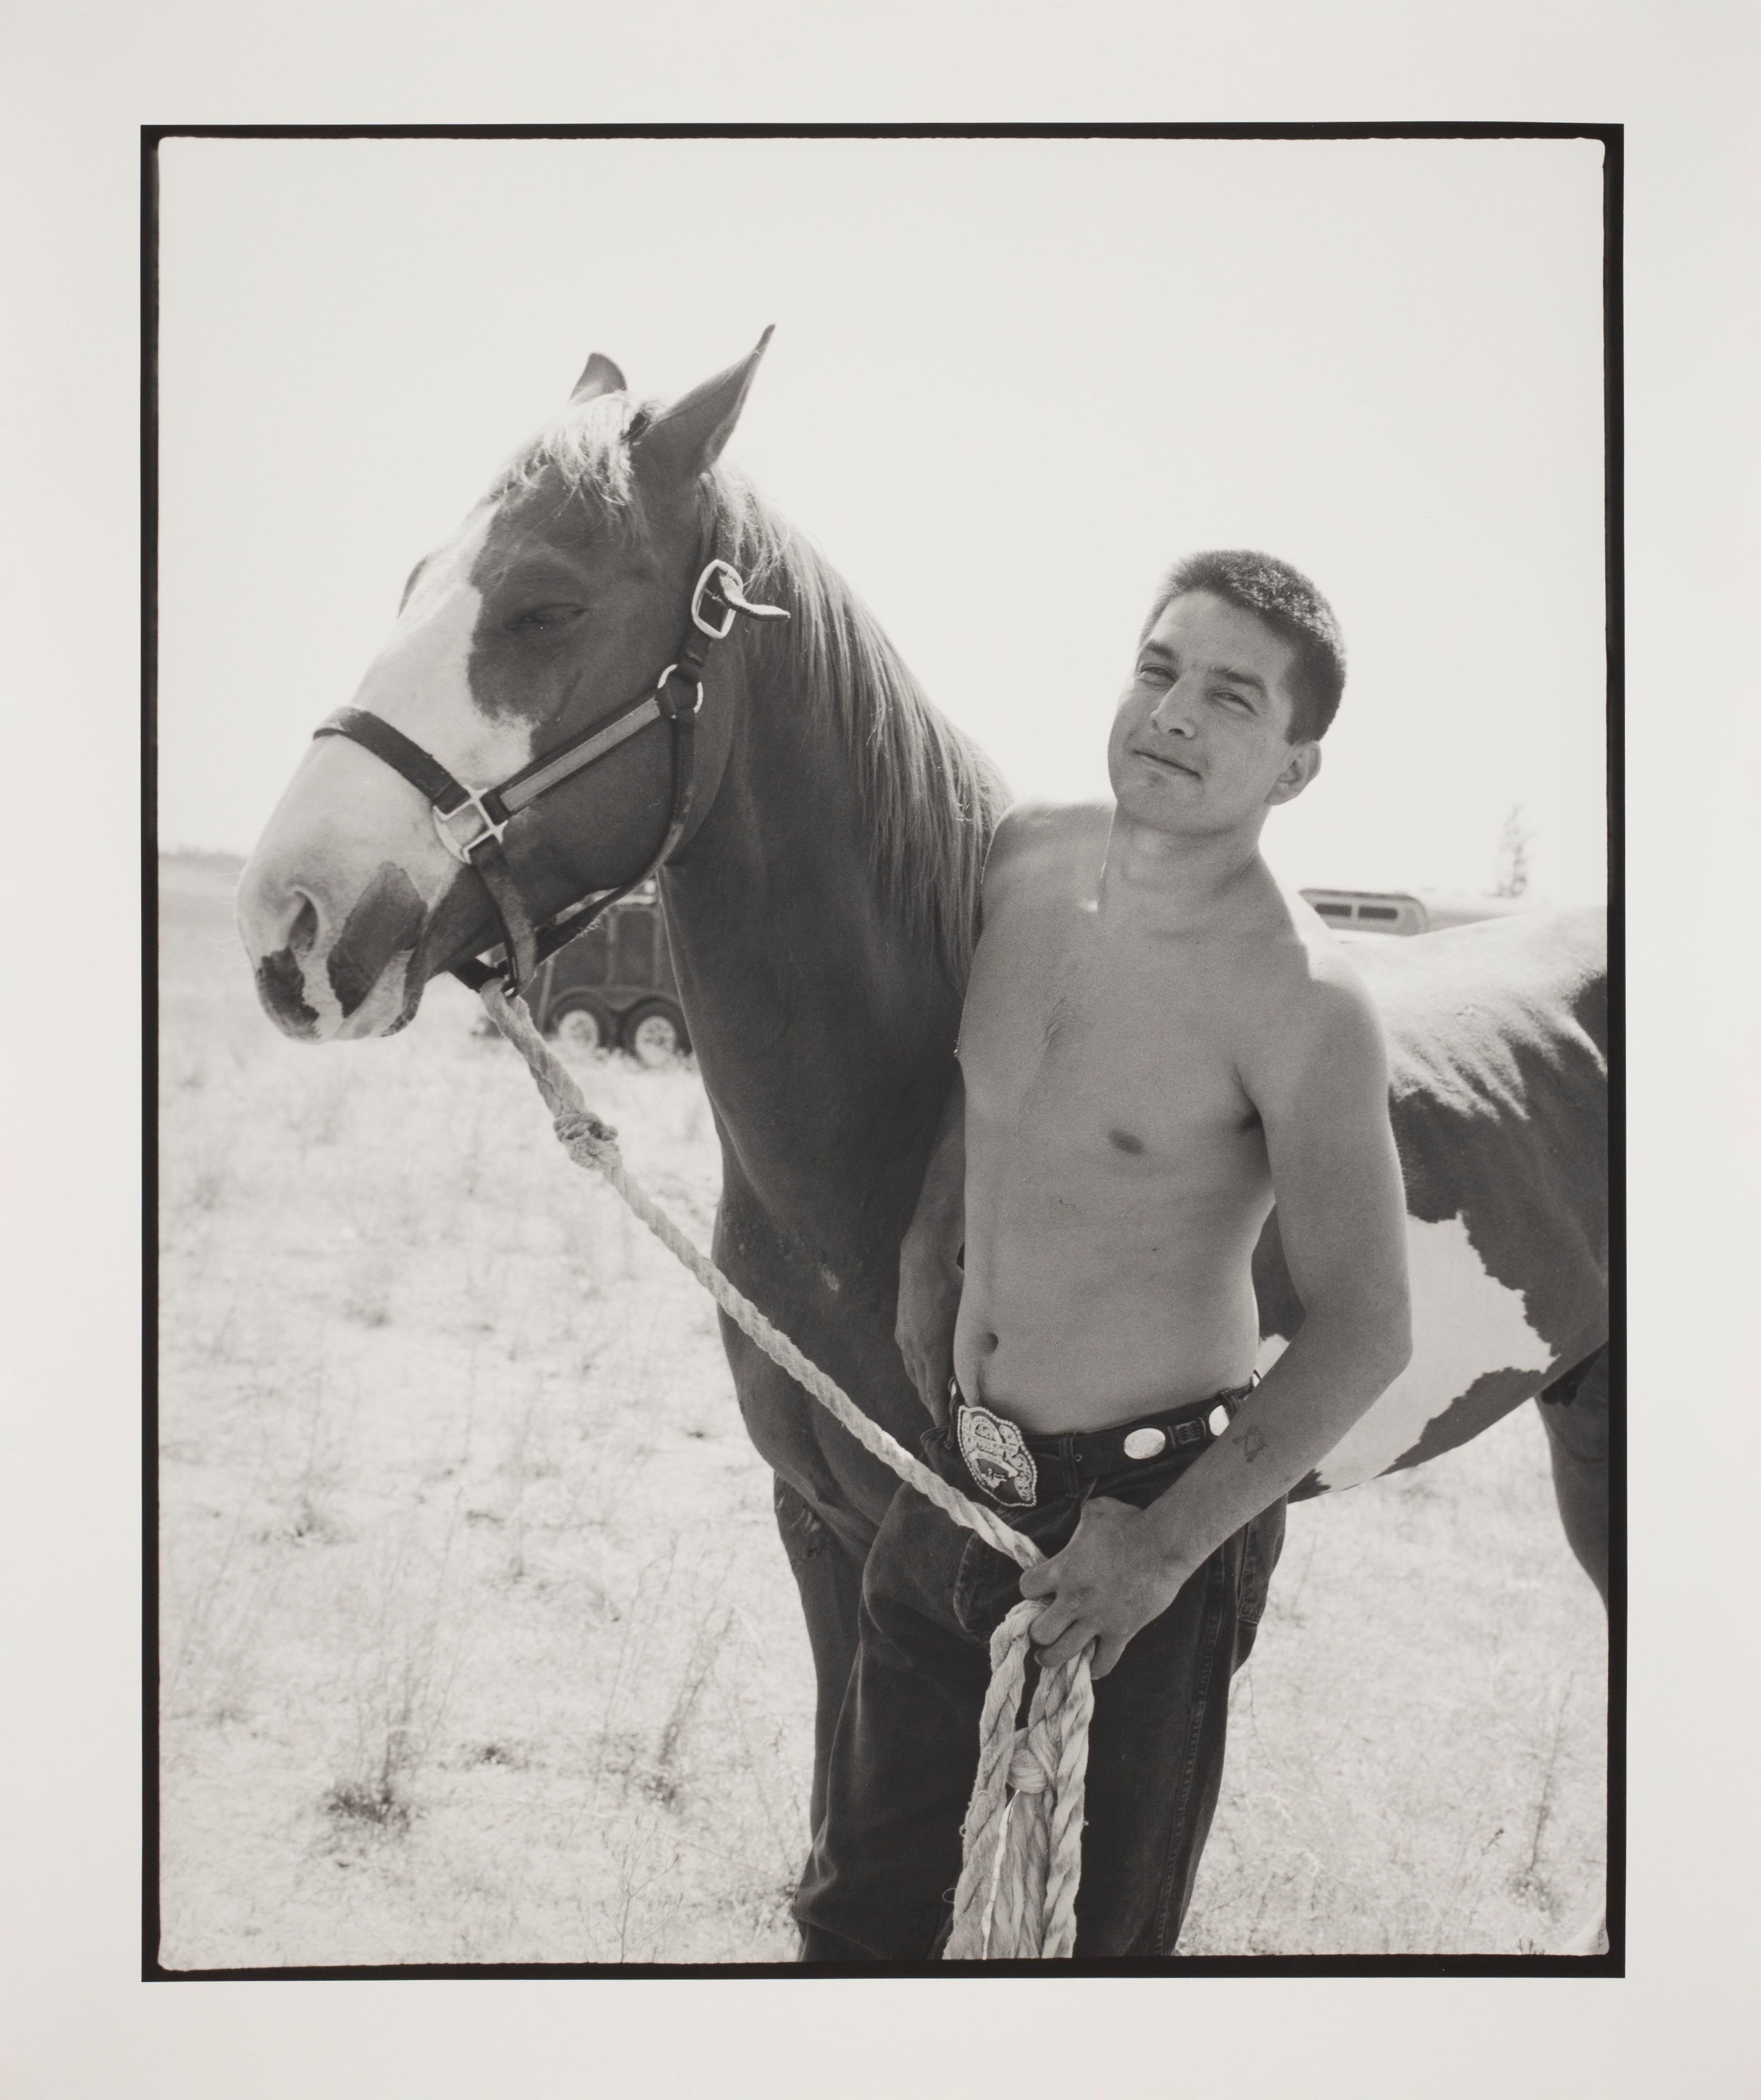 Zeitgenössisches Foto von Hunter Barnes von einem Jungen mit Pferd auf einem örtlichen Rodeo im Angebot 2